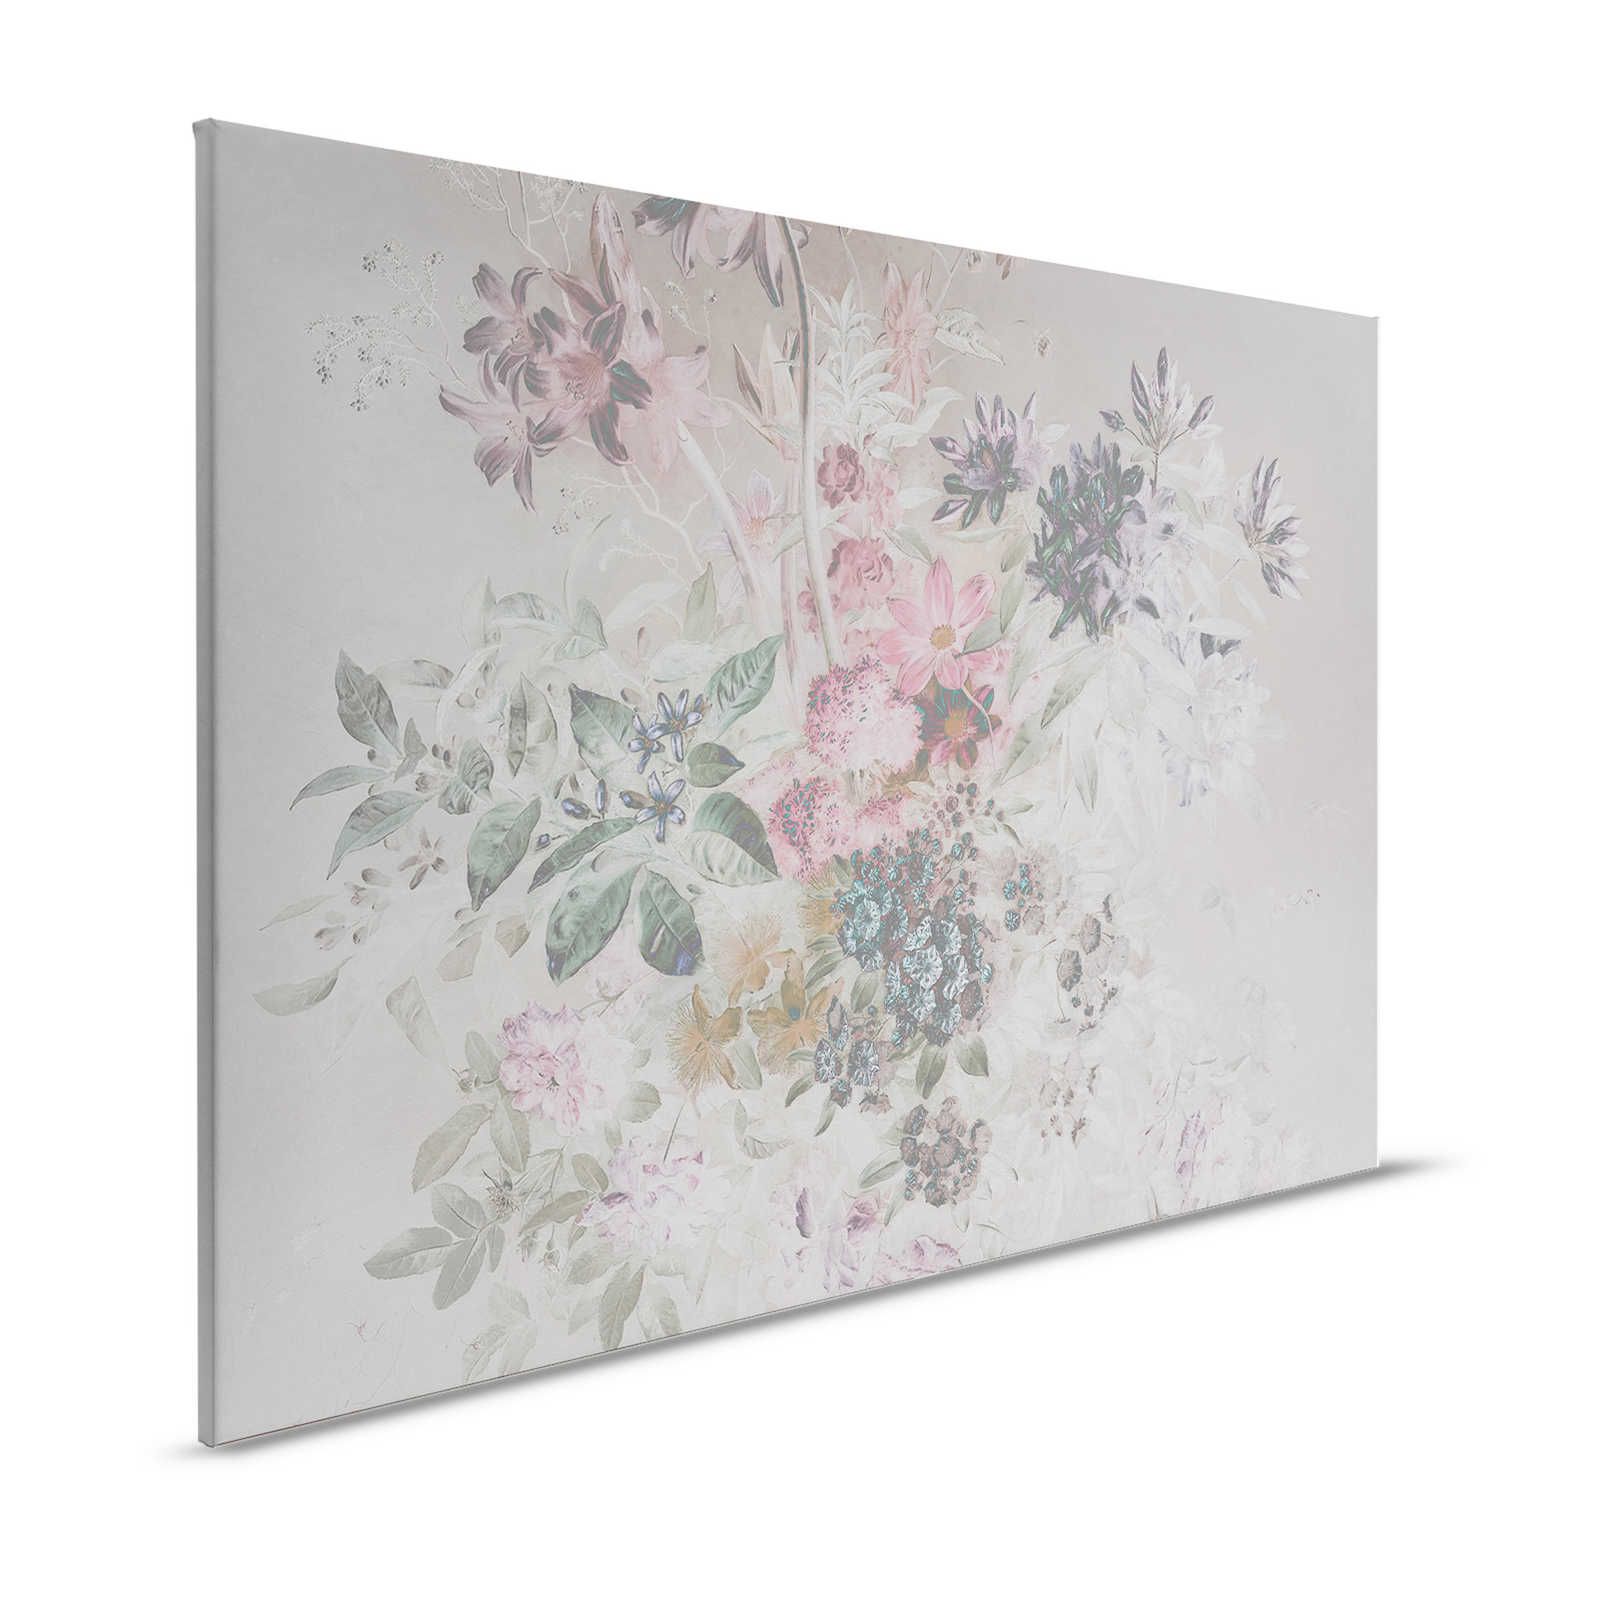 Blumen Leinwandbild mit Pastellfarben Design – 1,20 m x 0,80 m
